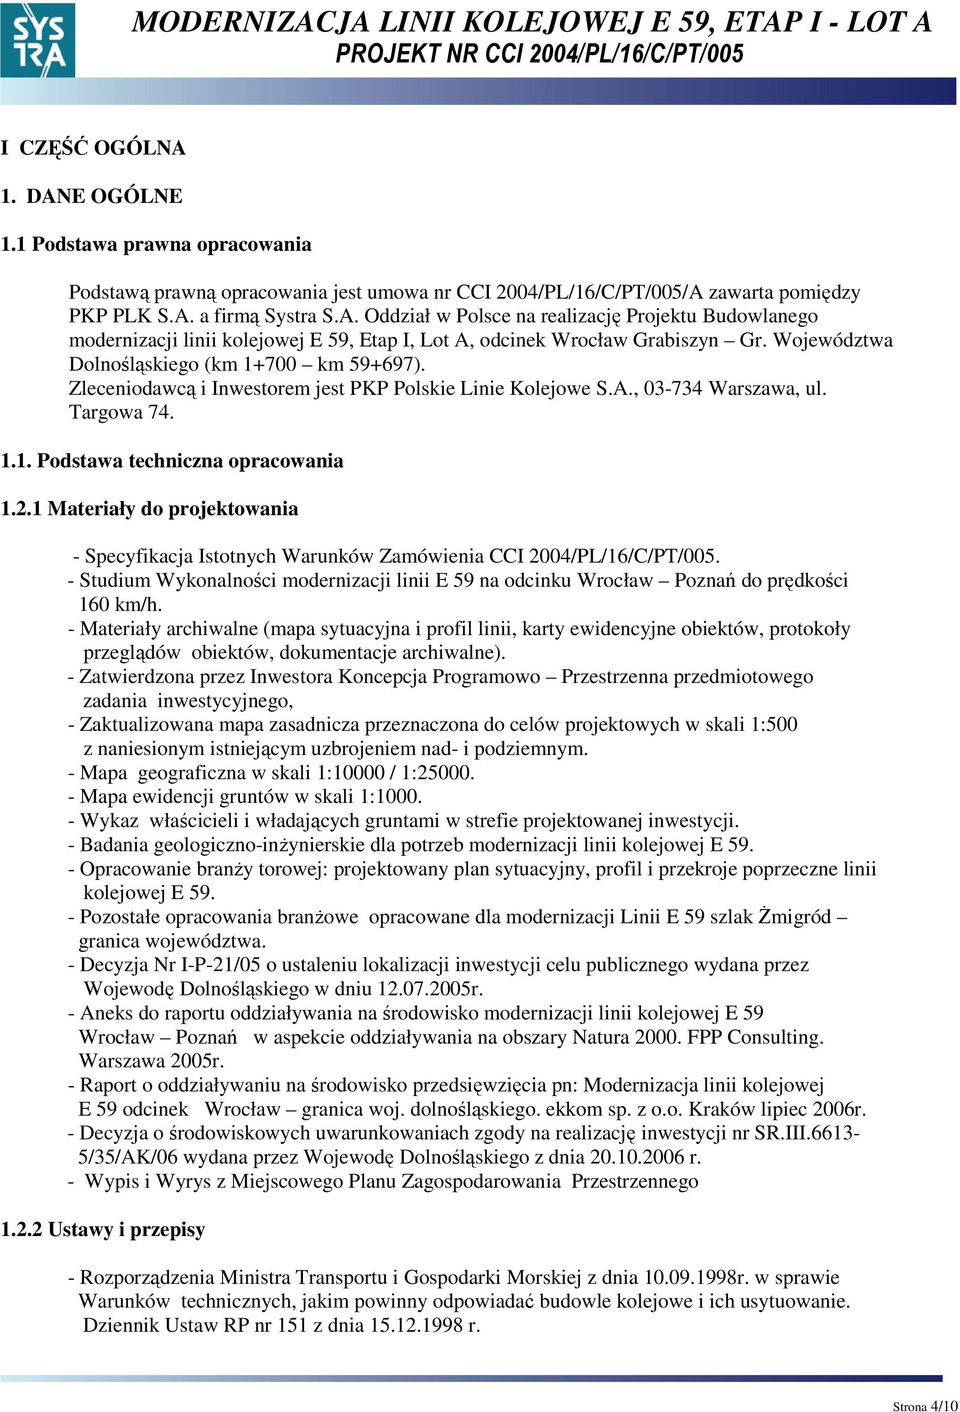 1 Materiały do projektowania - Specyfikacja Istotnych Warunków Zamówienia CCI 2004/PL/16/C/PT/005. - Studium Wykonalności modernizacji linii E 59 na odcinku Wrocław Poznań do prędkości 160 km/h.